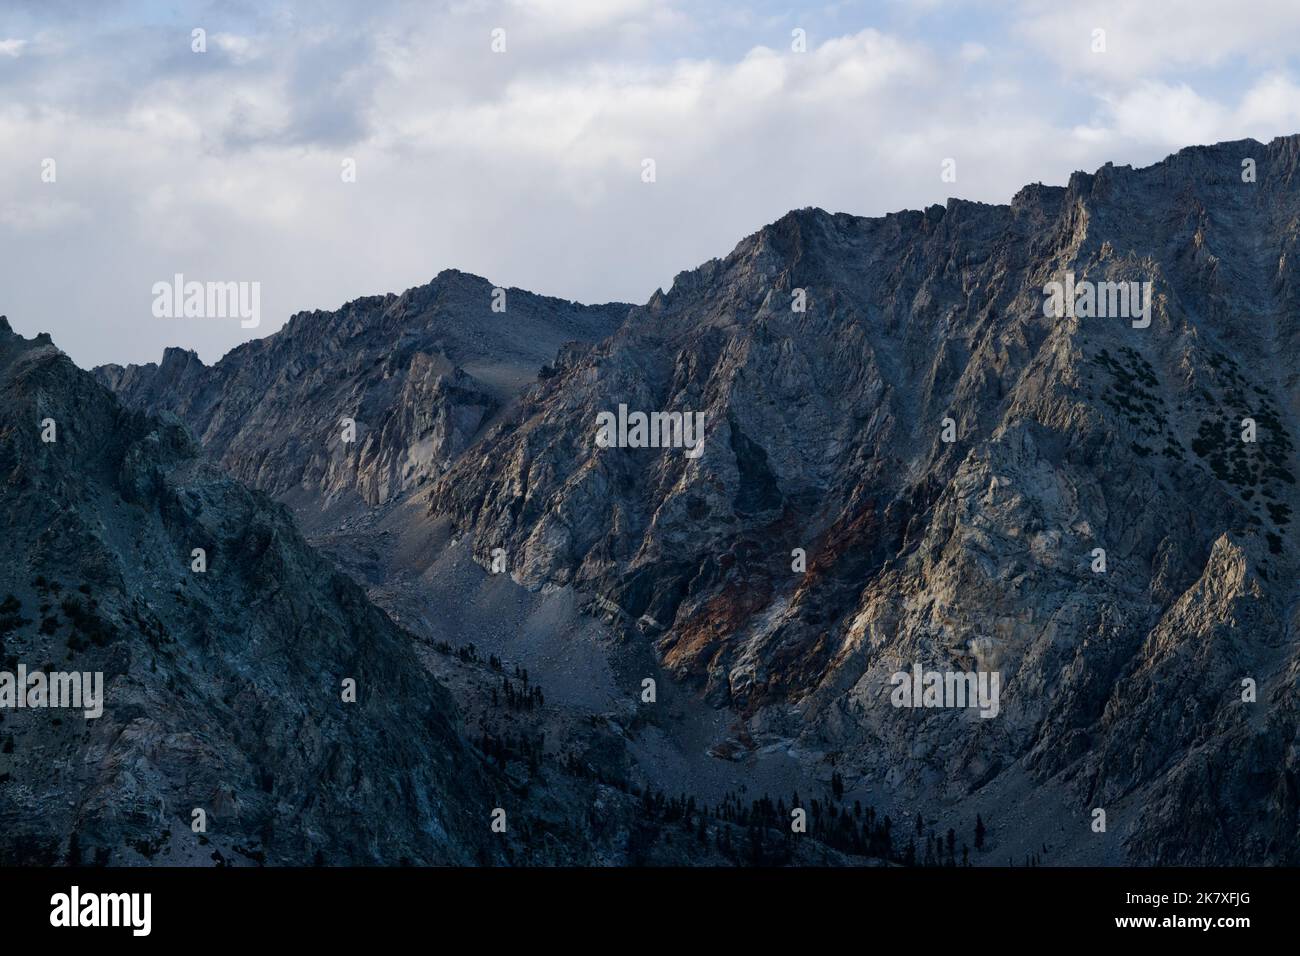 Horizontale Ansicht des dramatischen Bergrückens, beleuchtet im Abendlicht Stockfoto